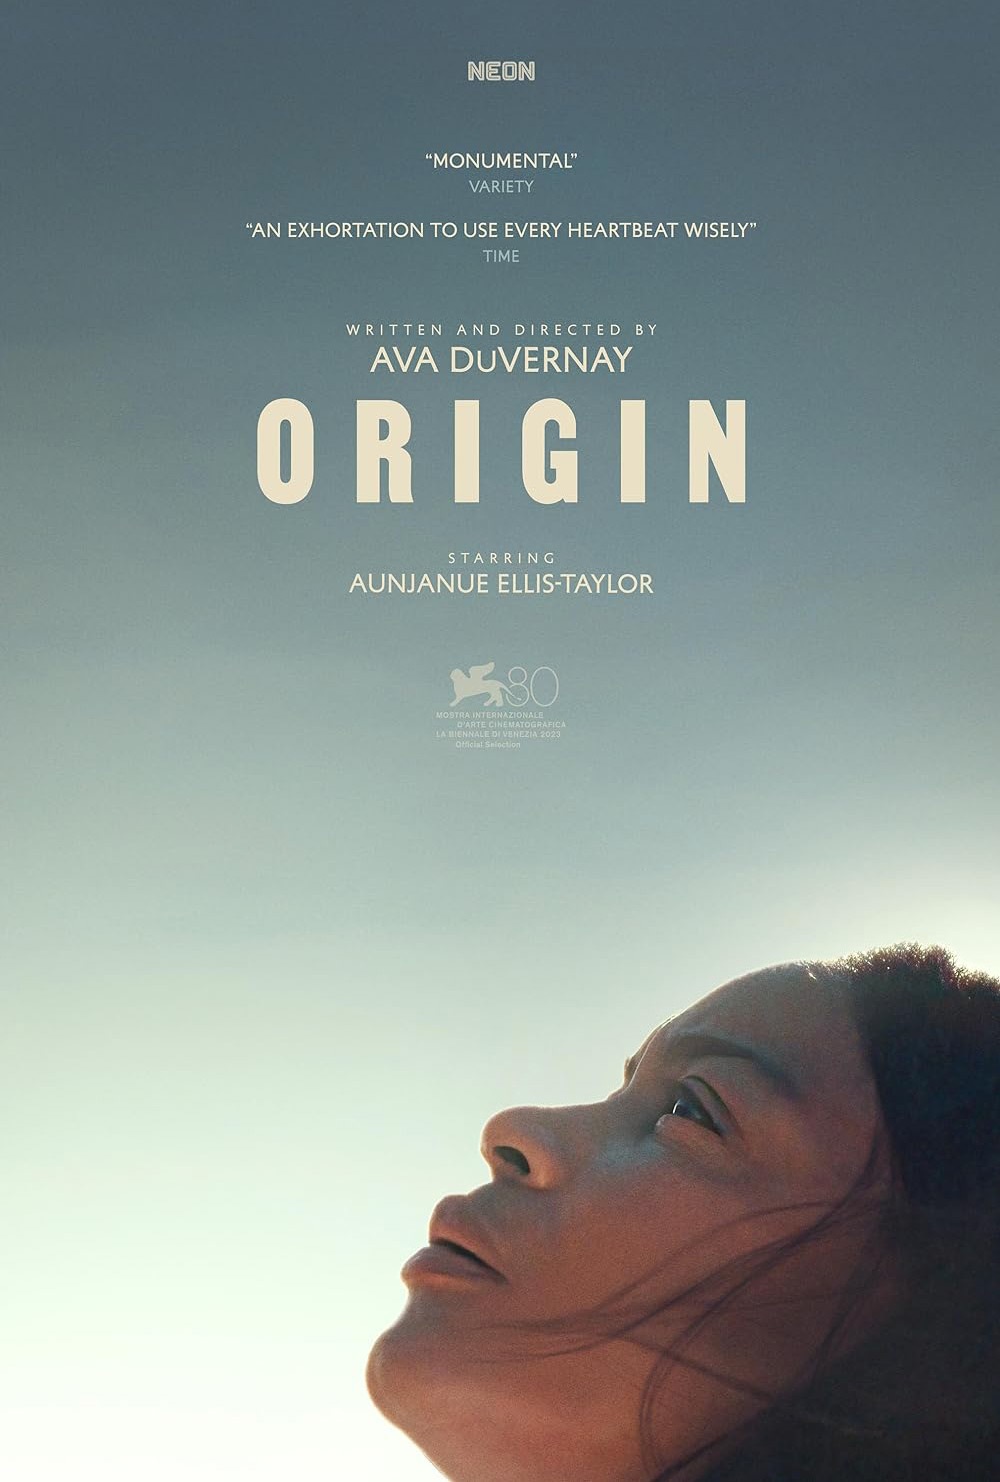 Origin film poster